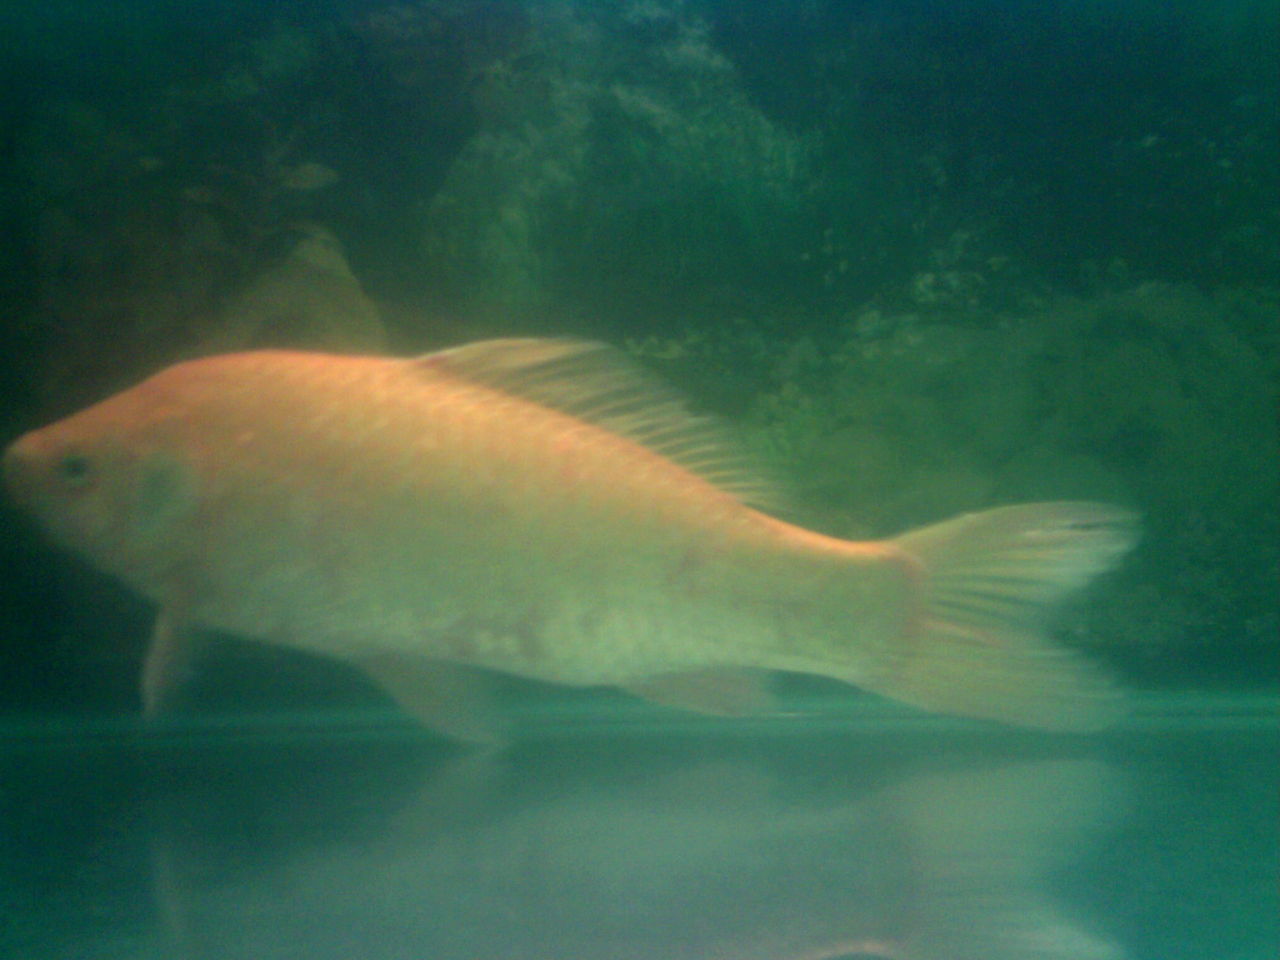 鯽魚金黃色的變異體